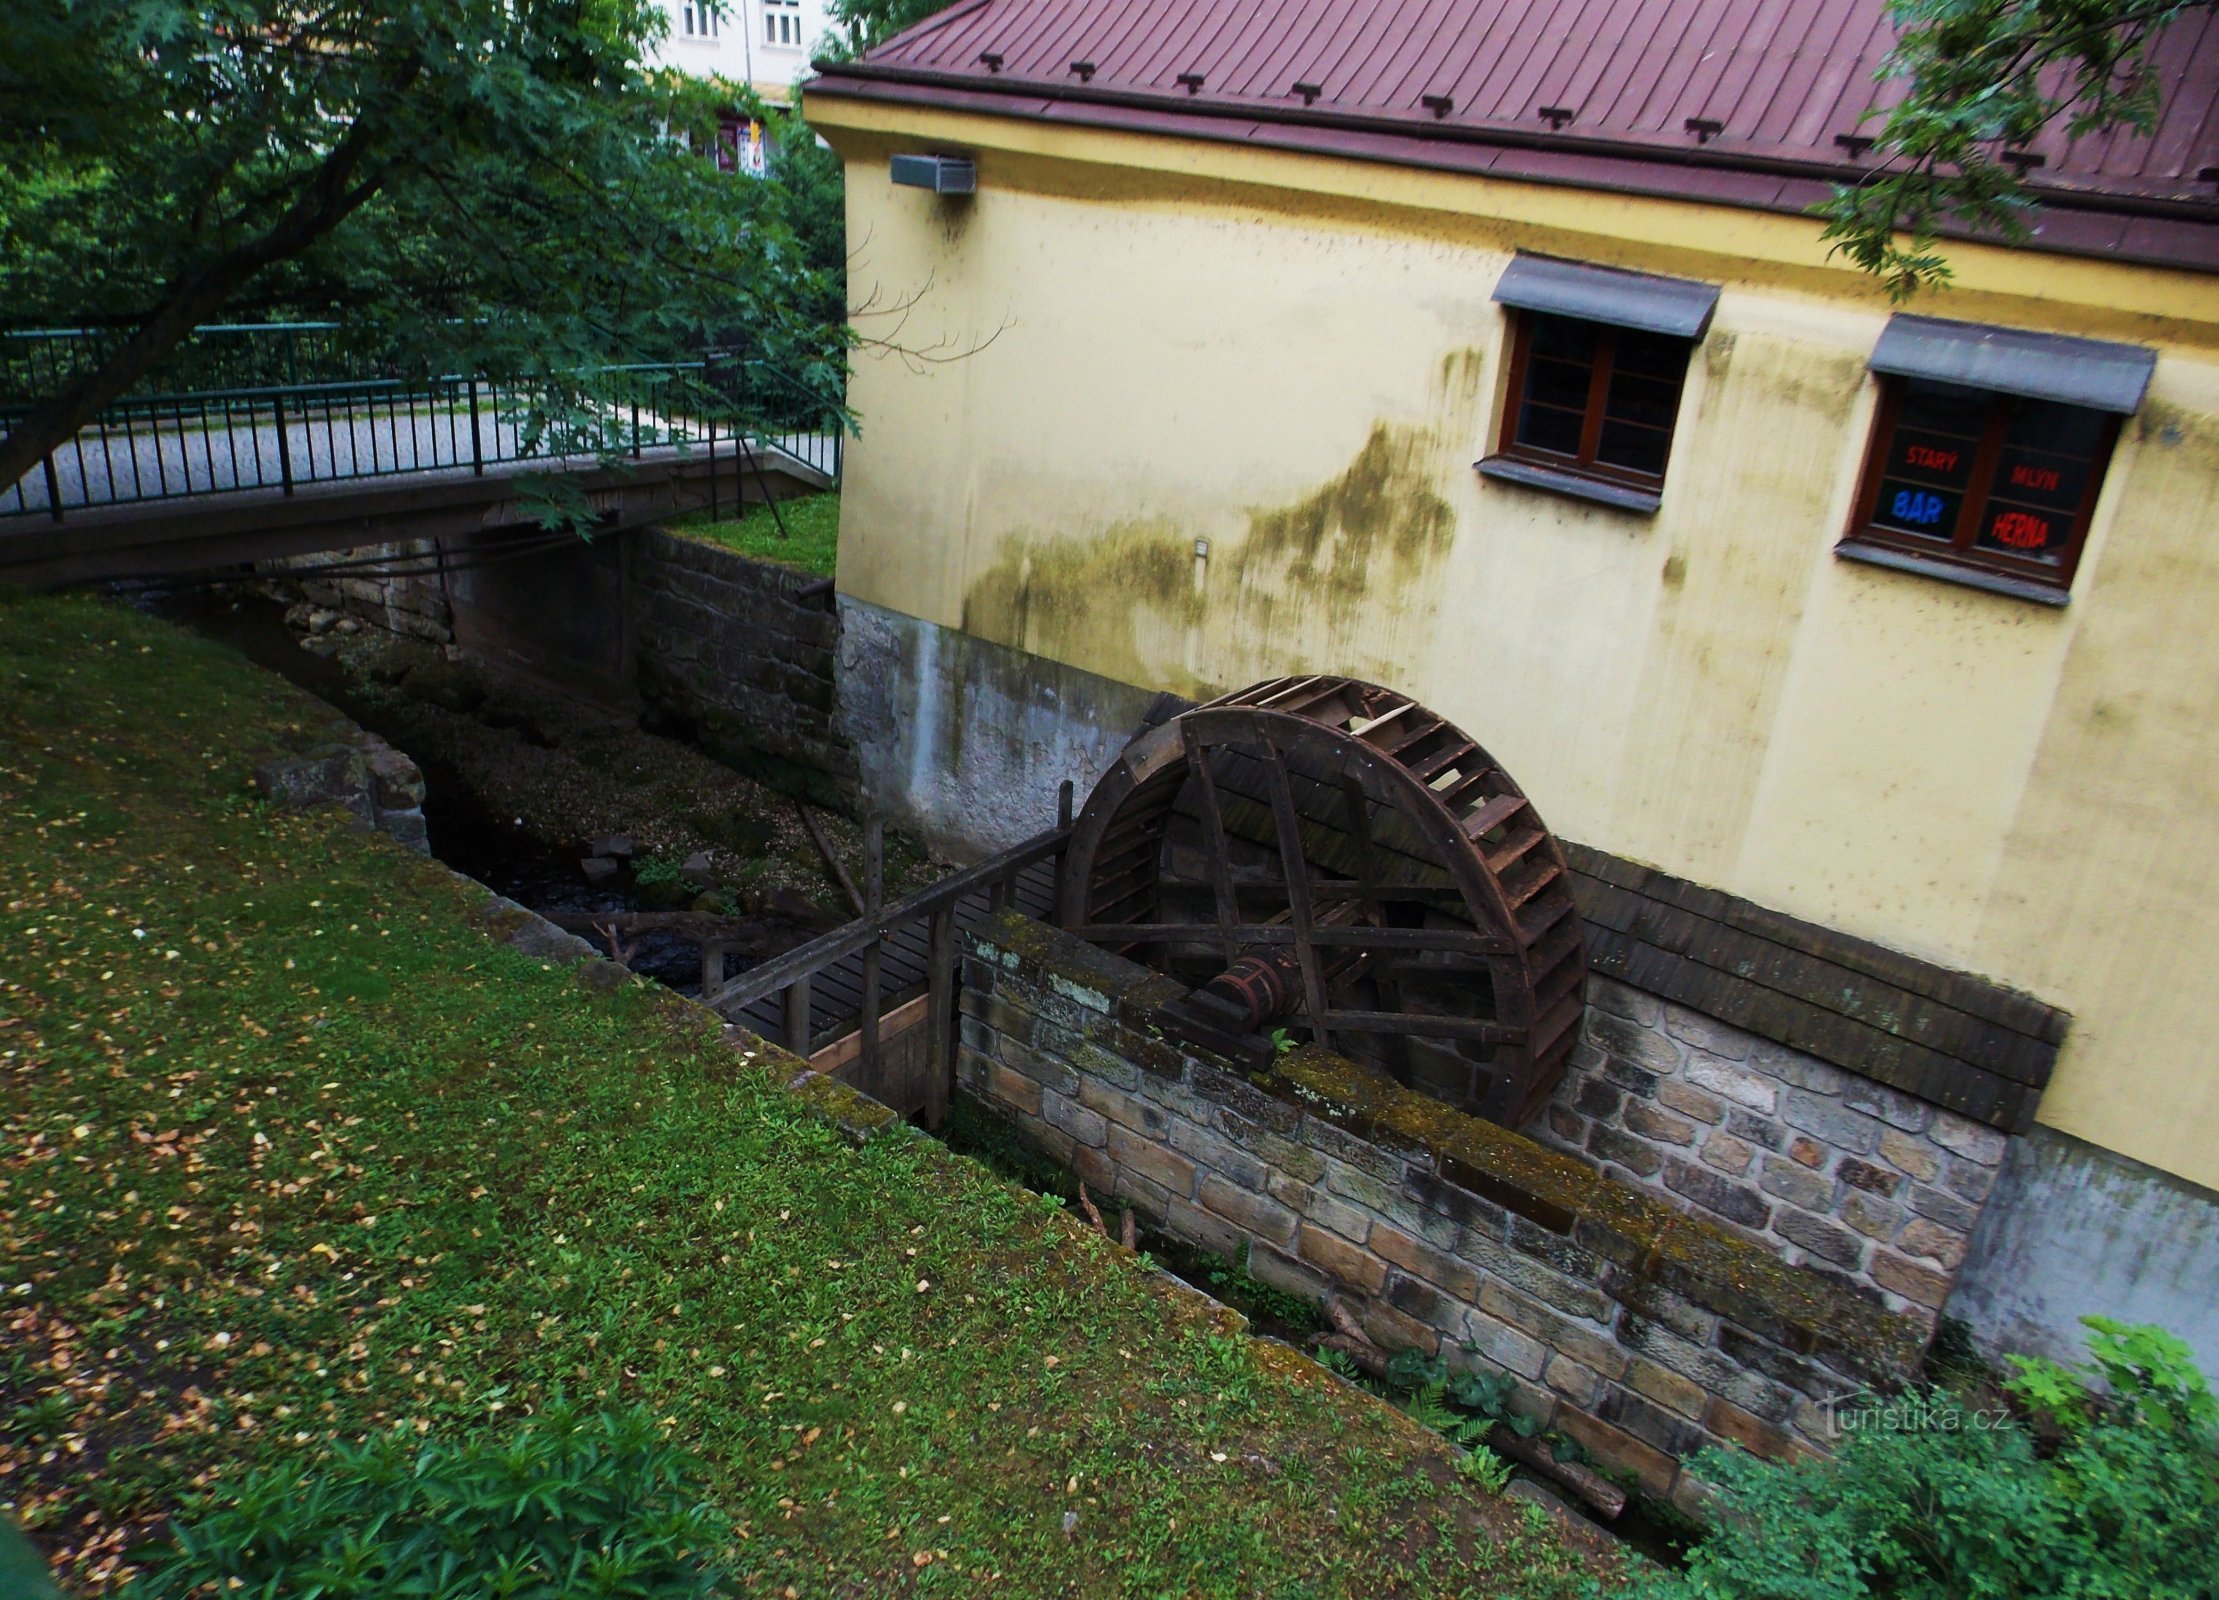 Polívkův, Koželuzský, Starý mlýn în Chrudim